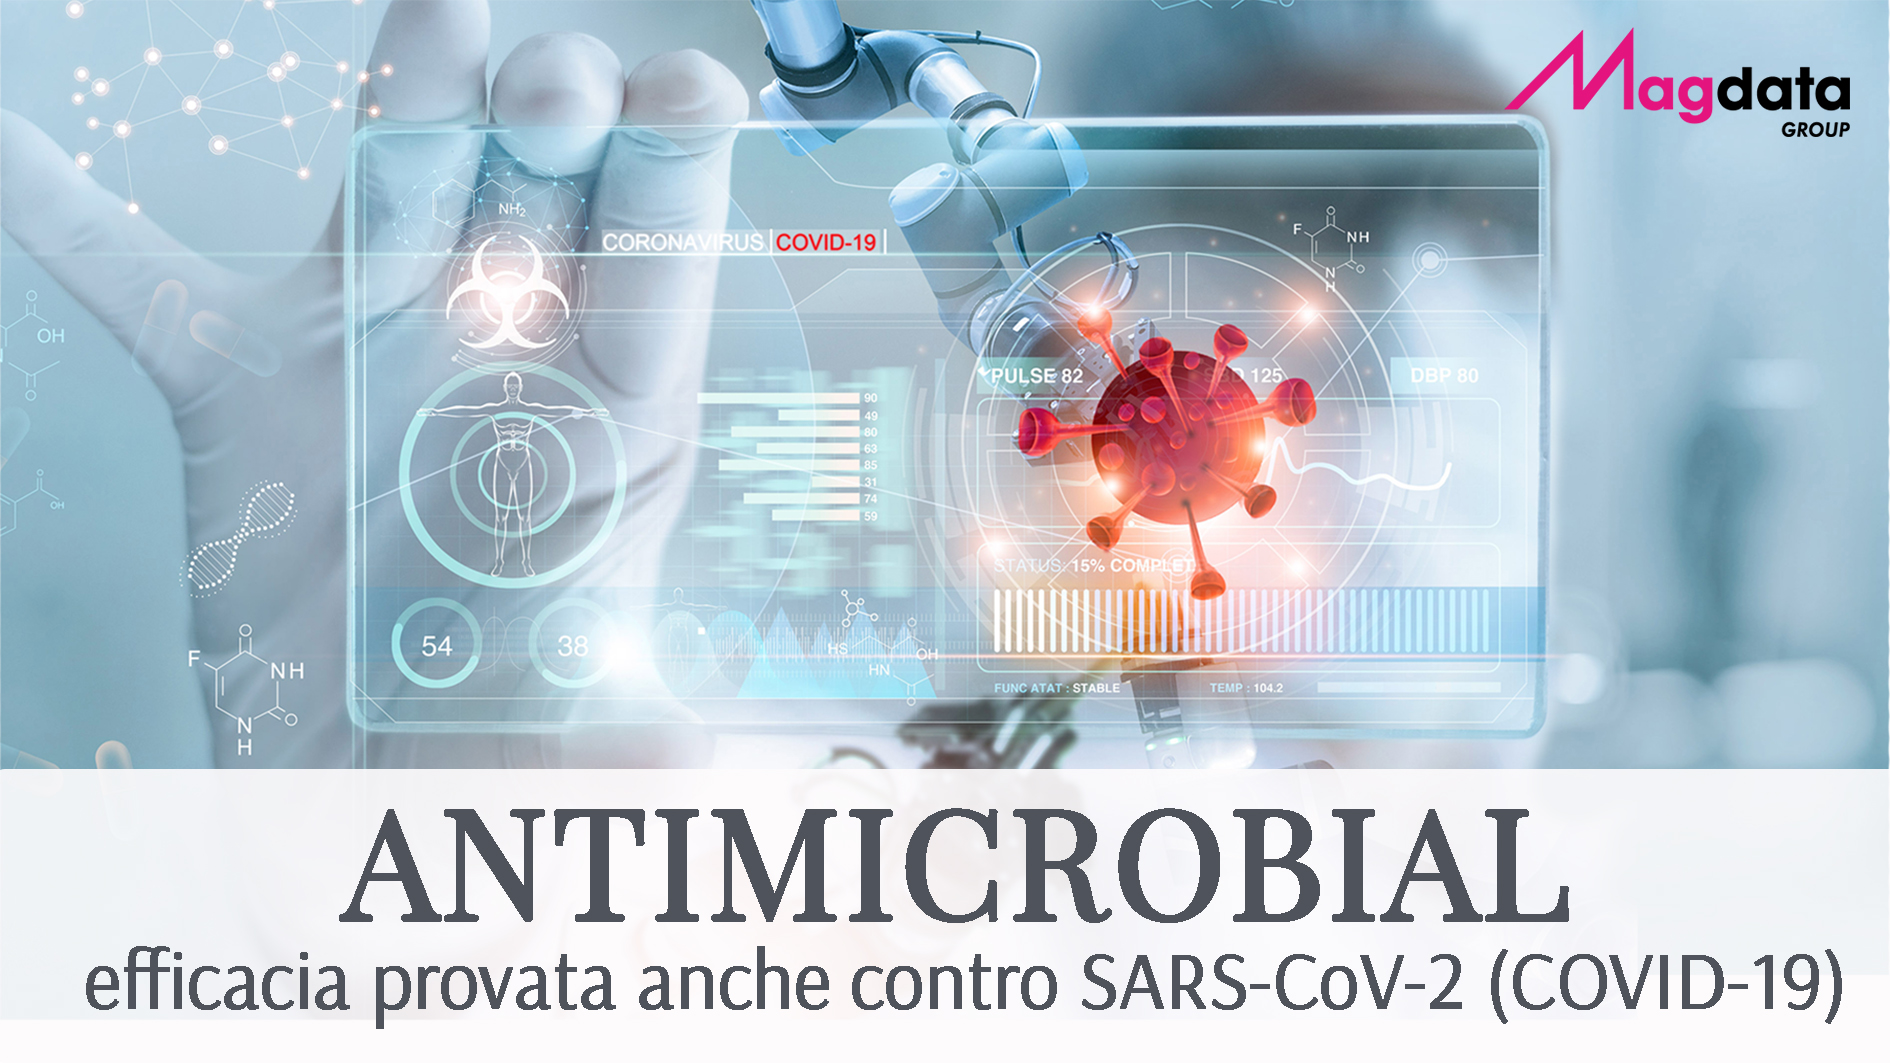 ANTIMICROBIAL: protezione da batteri e virus (Covid incluso)